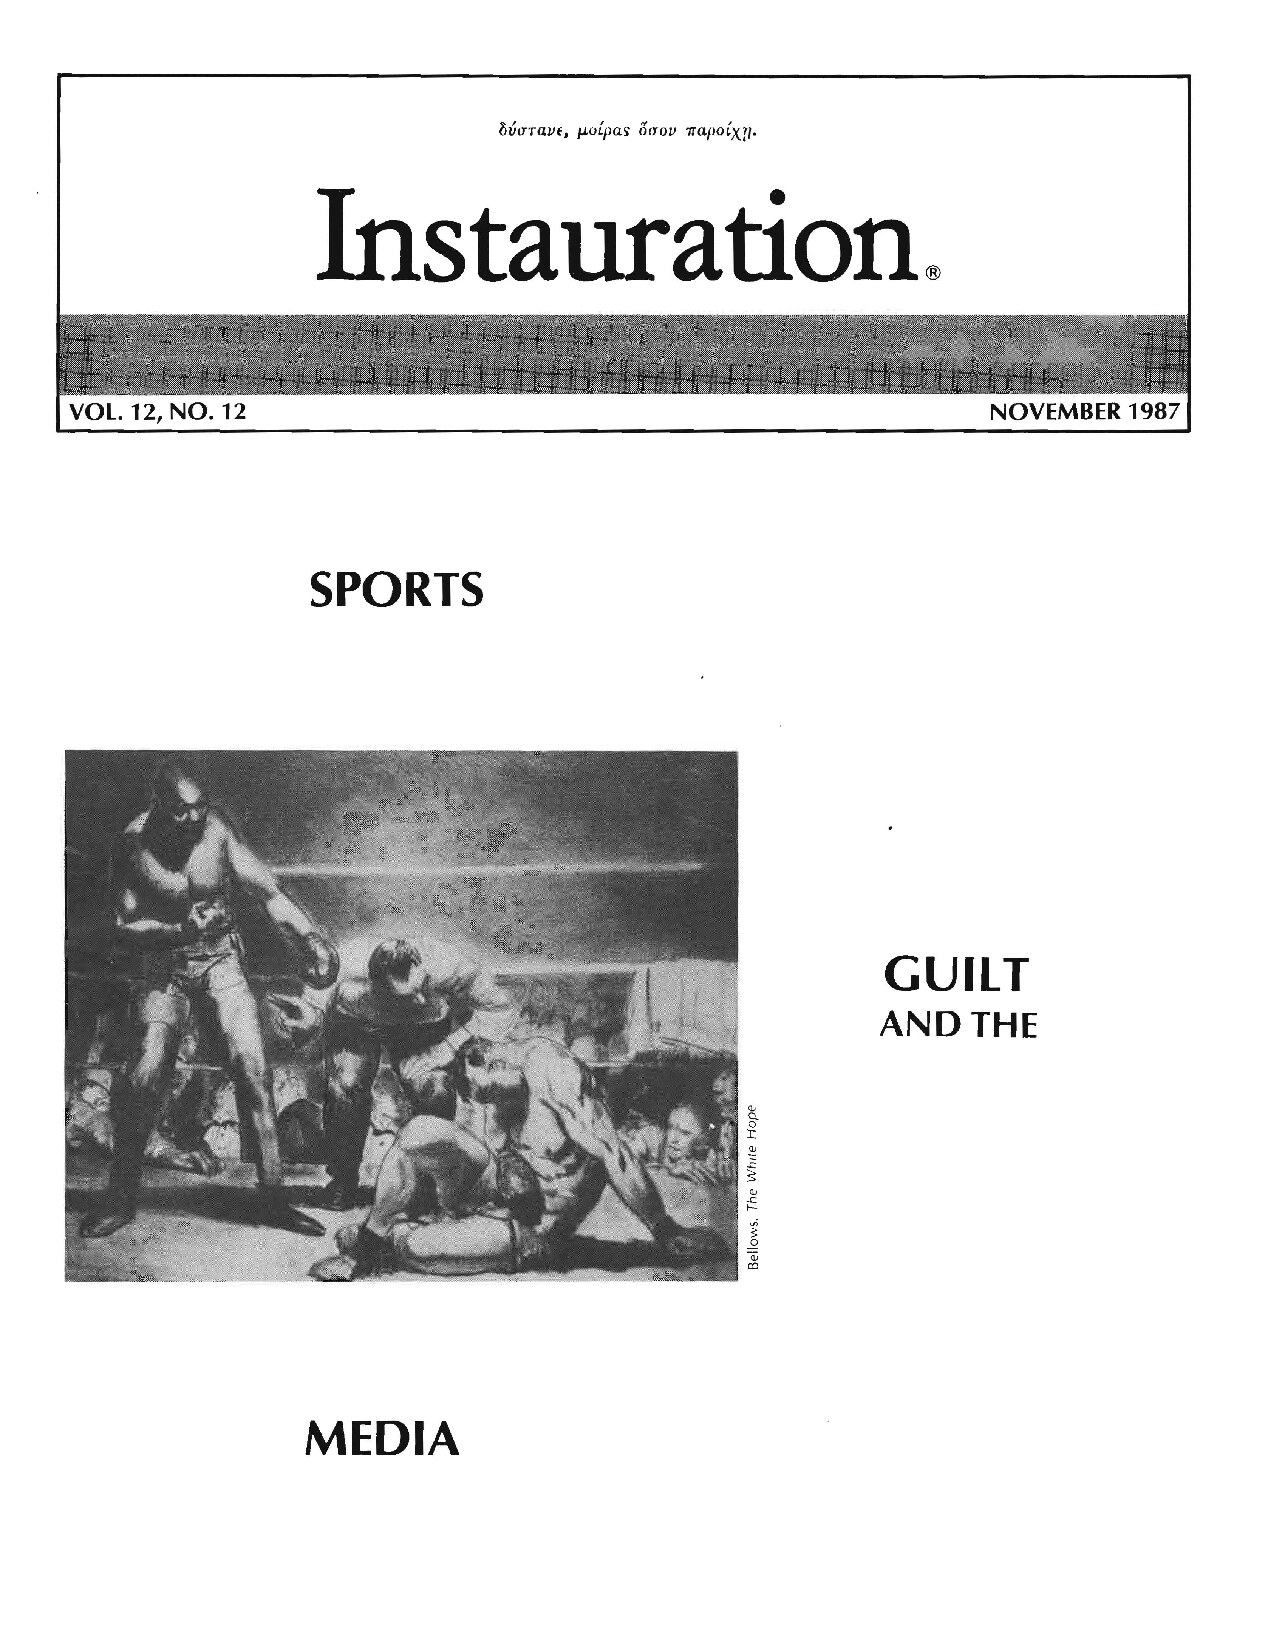 Instauration-1987-11-November-Vol12-No12